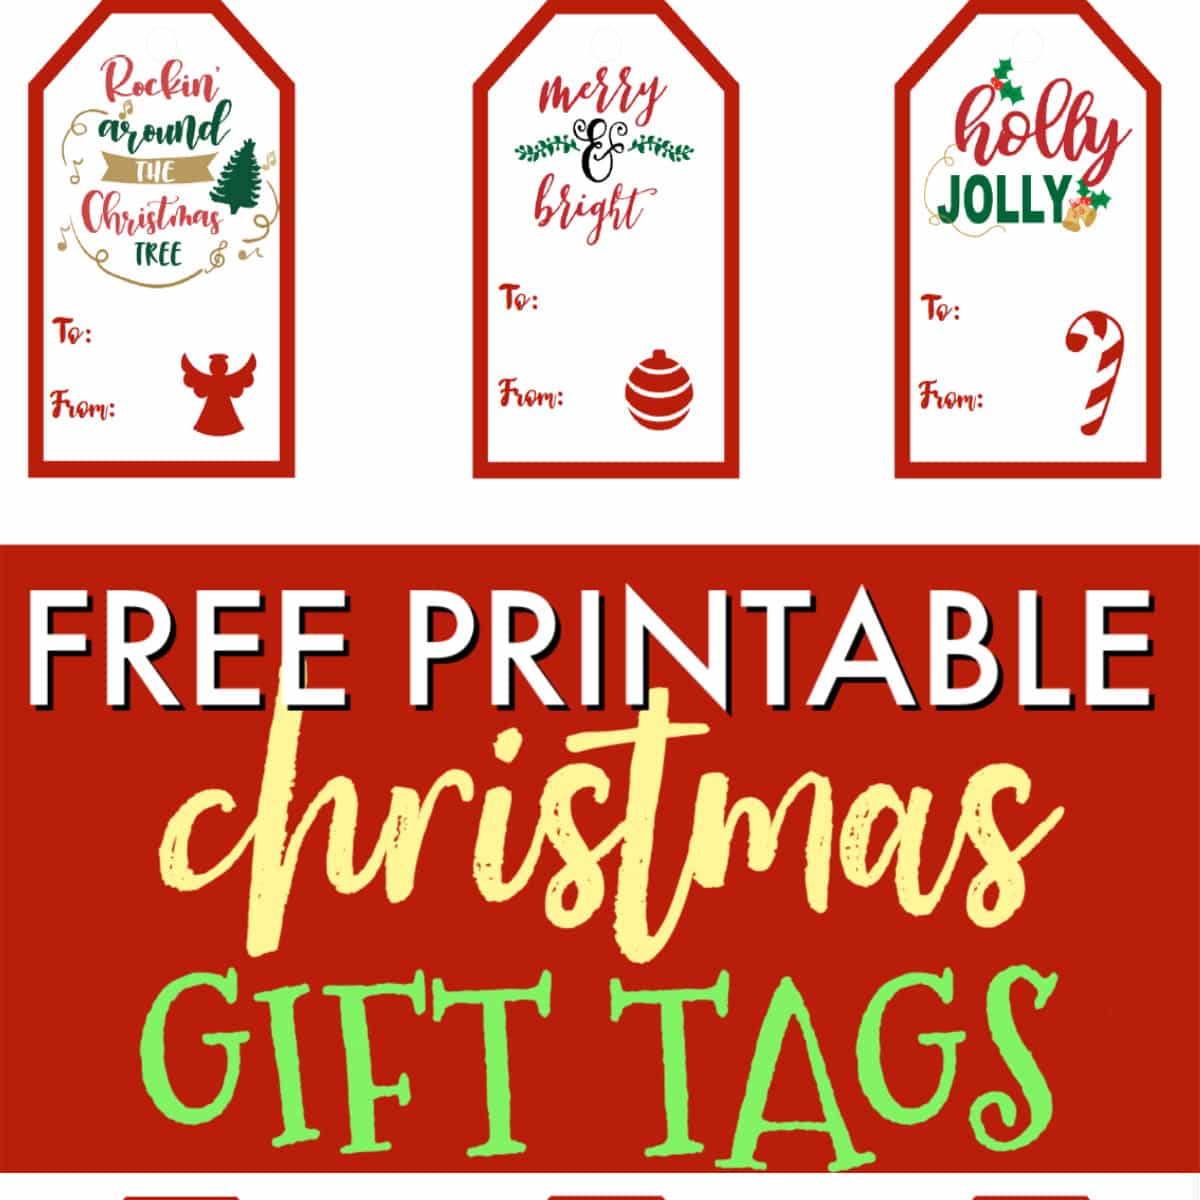 8 Awesome Diy Gift Basket Ideas Free Printable Christmas Gift Tags